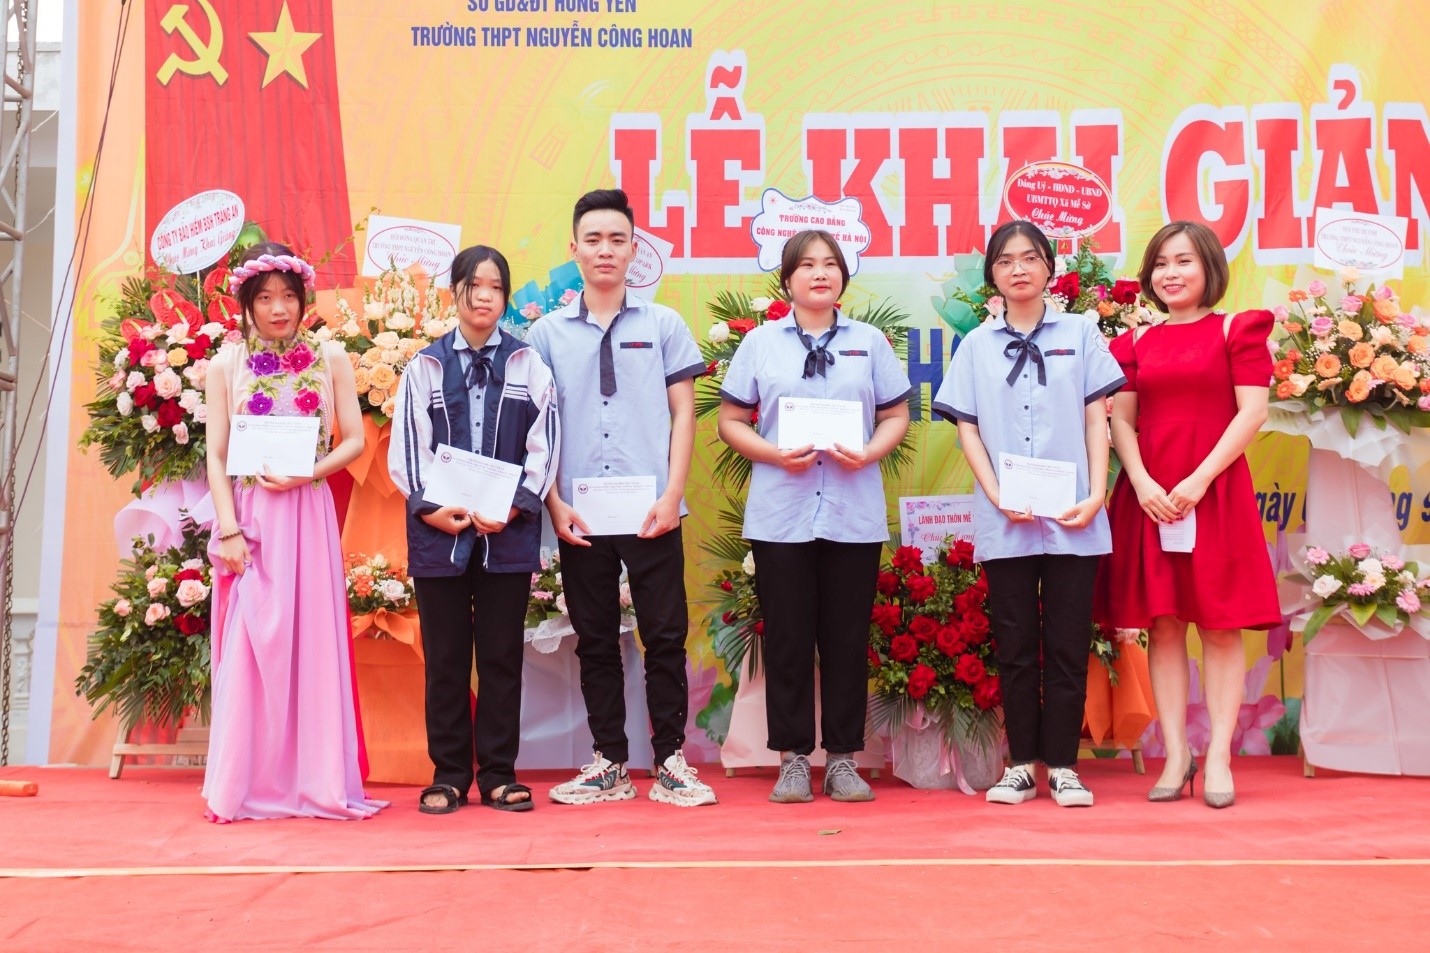 Cô Phạm Thị Thùy Dung – Giám đốc trung tâm tuyển sinh game cá cược hay
 đã trao các suất học bổng cho các bạn học sinh nghèo vượt khó tại THPT Nguyễn Công Hoan 